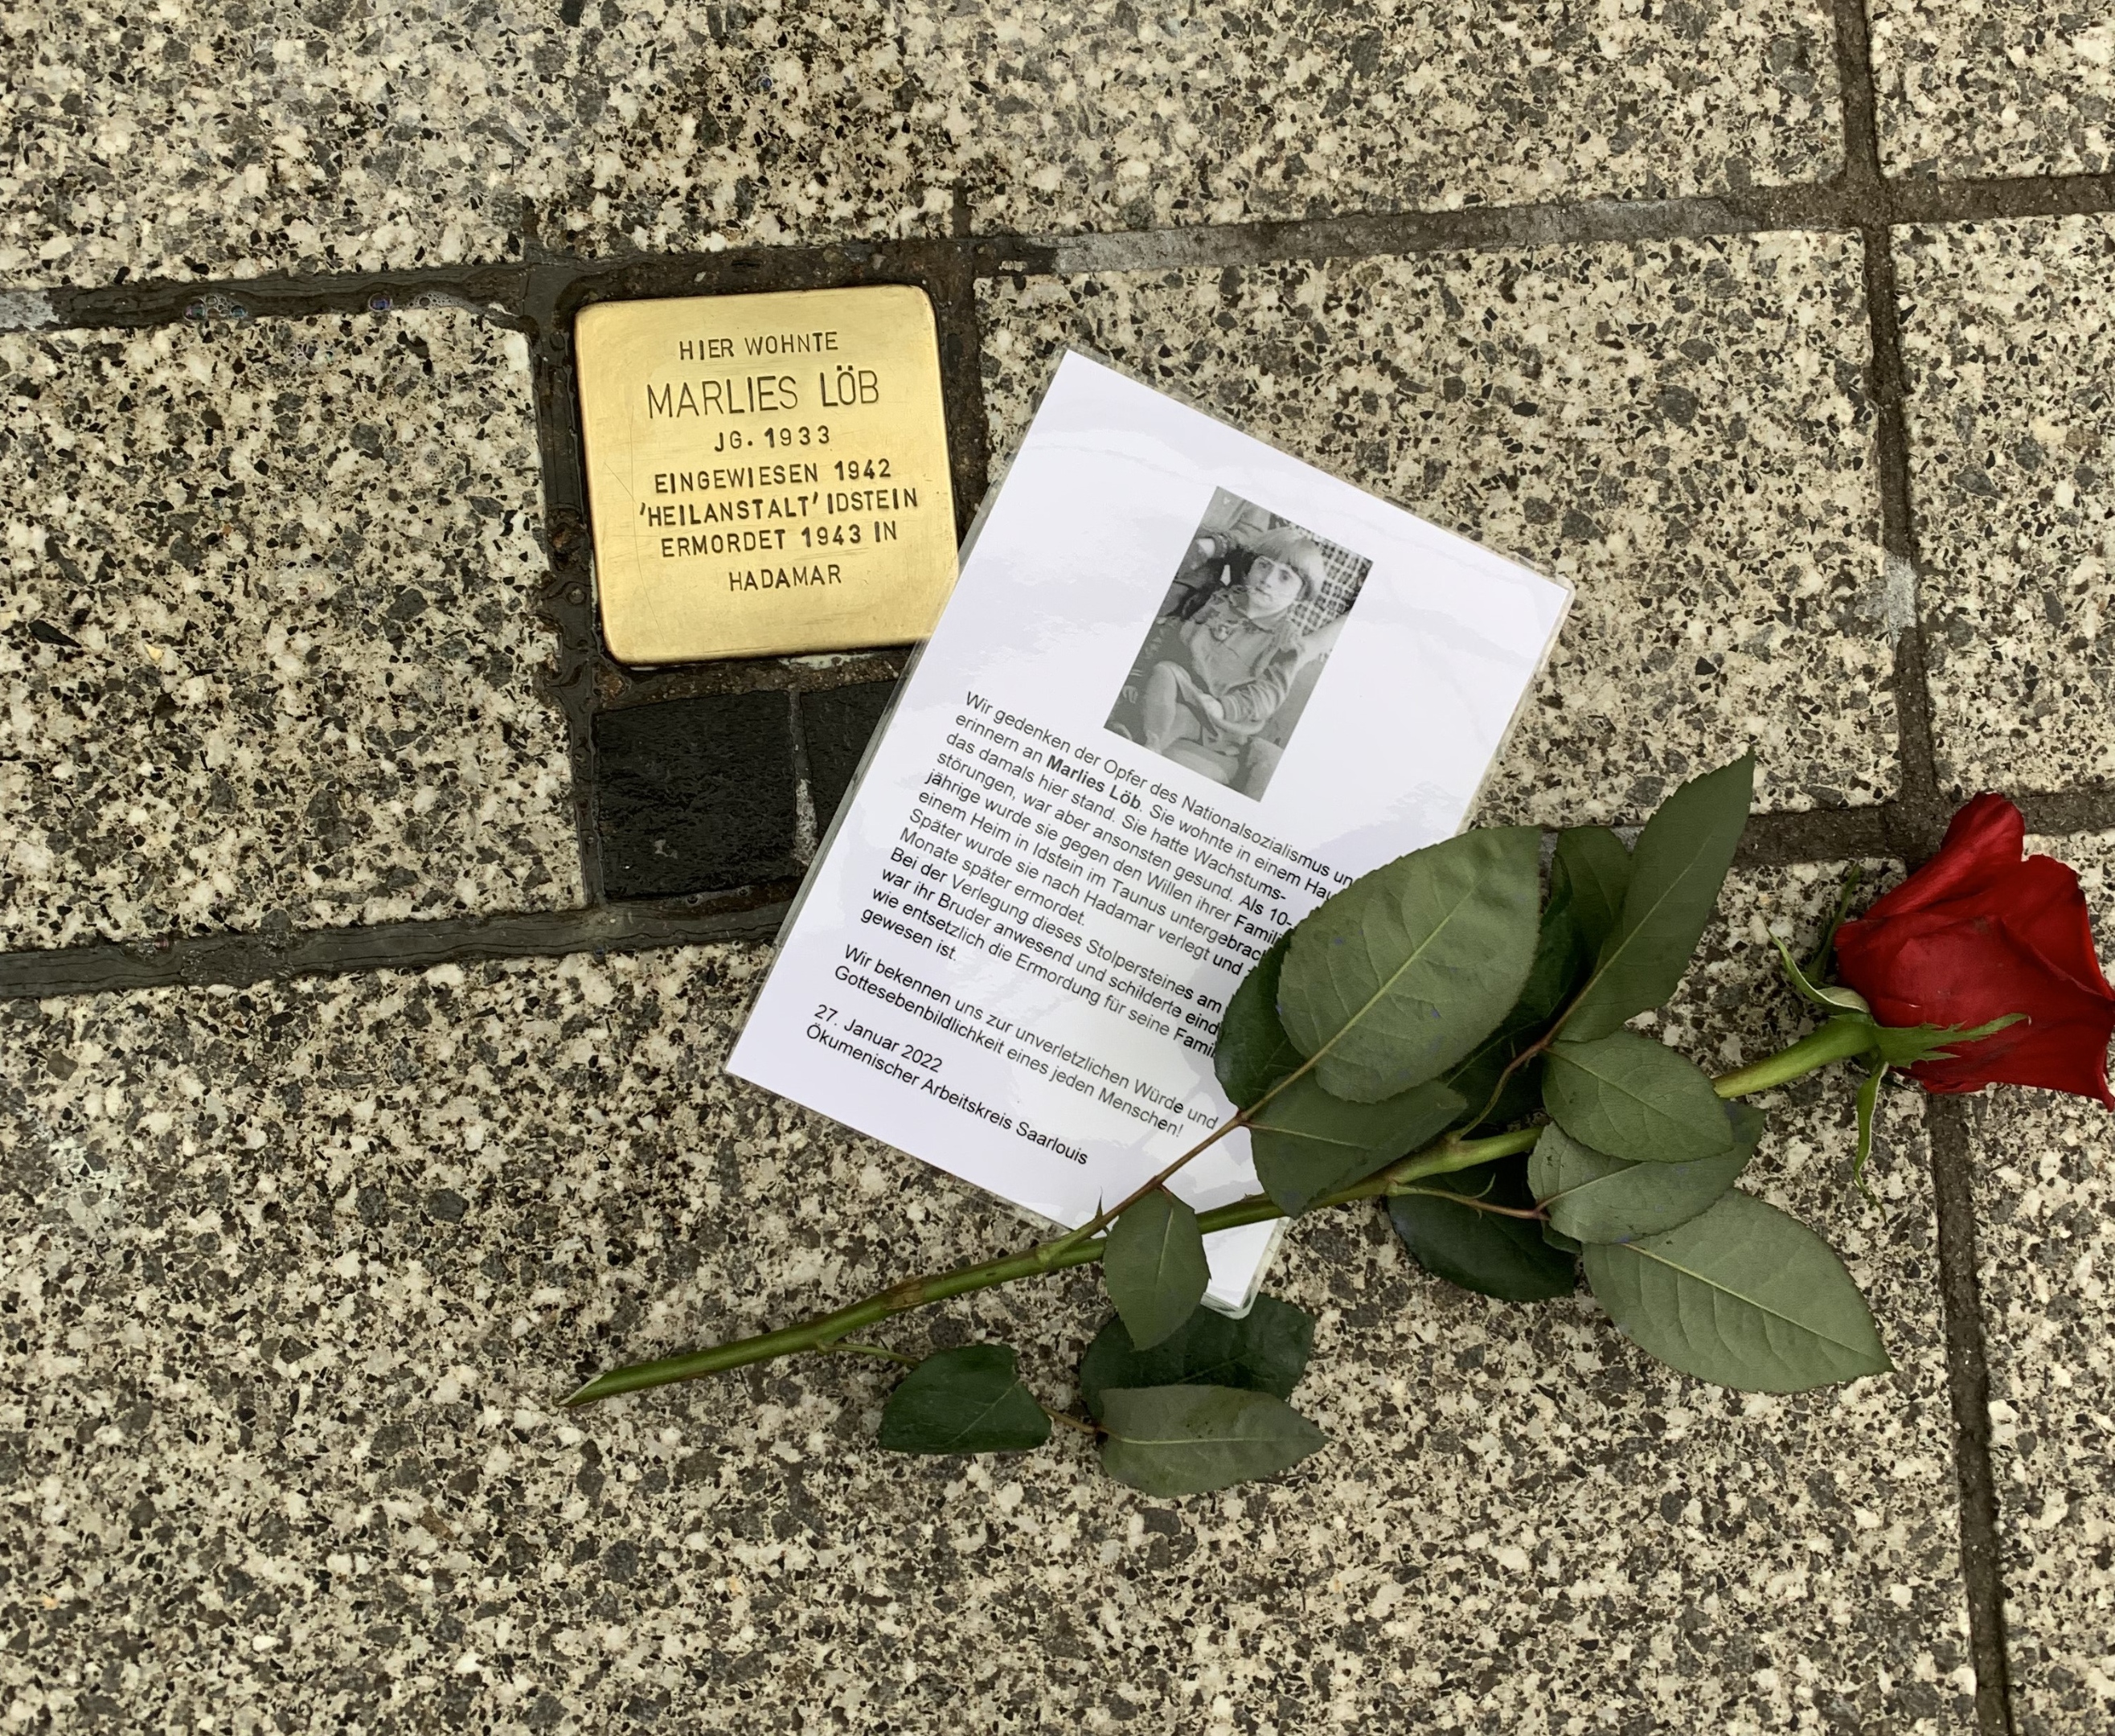 Am Stolperstein für die ermordete Marlies Löb legen Mitglieder des Ökumenischen Arbeitskreises eine Rose sowie Informationen zur Biographie nieder. Foto: uk